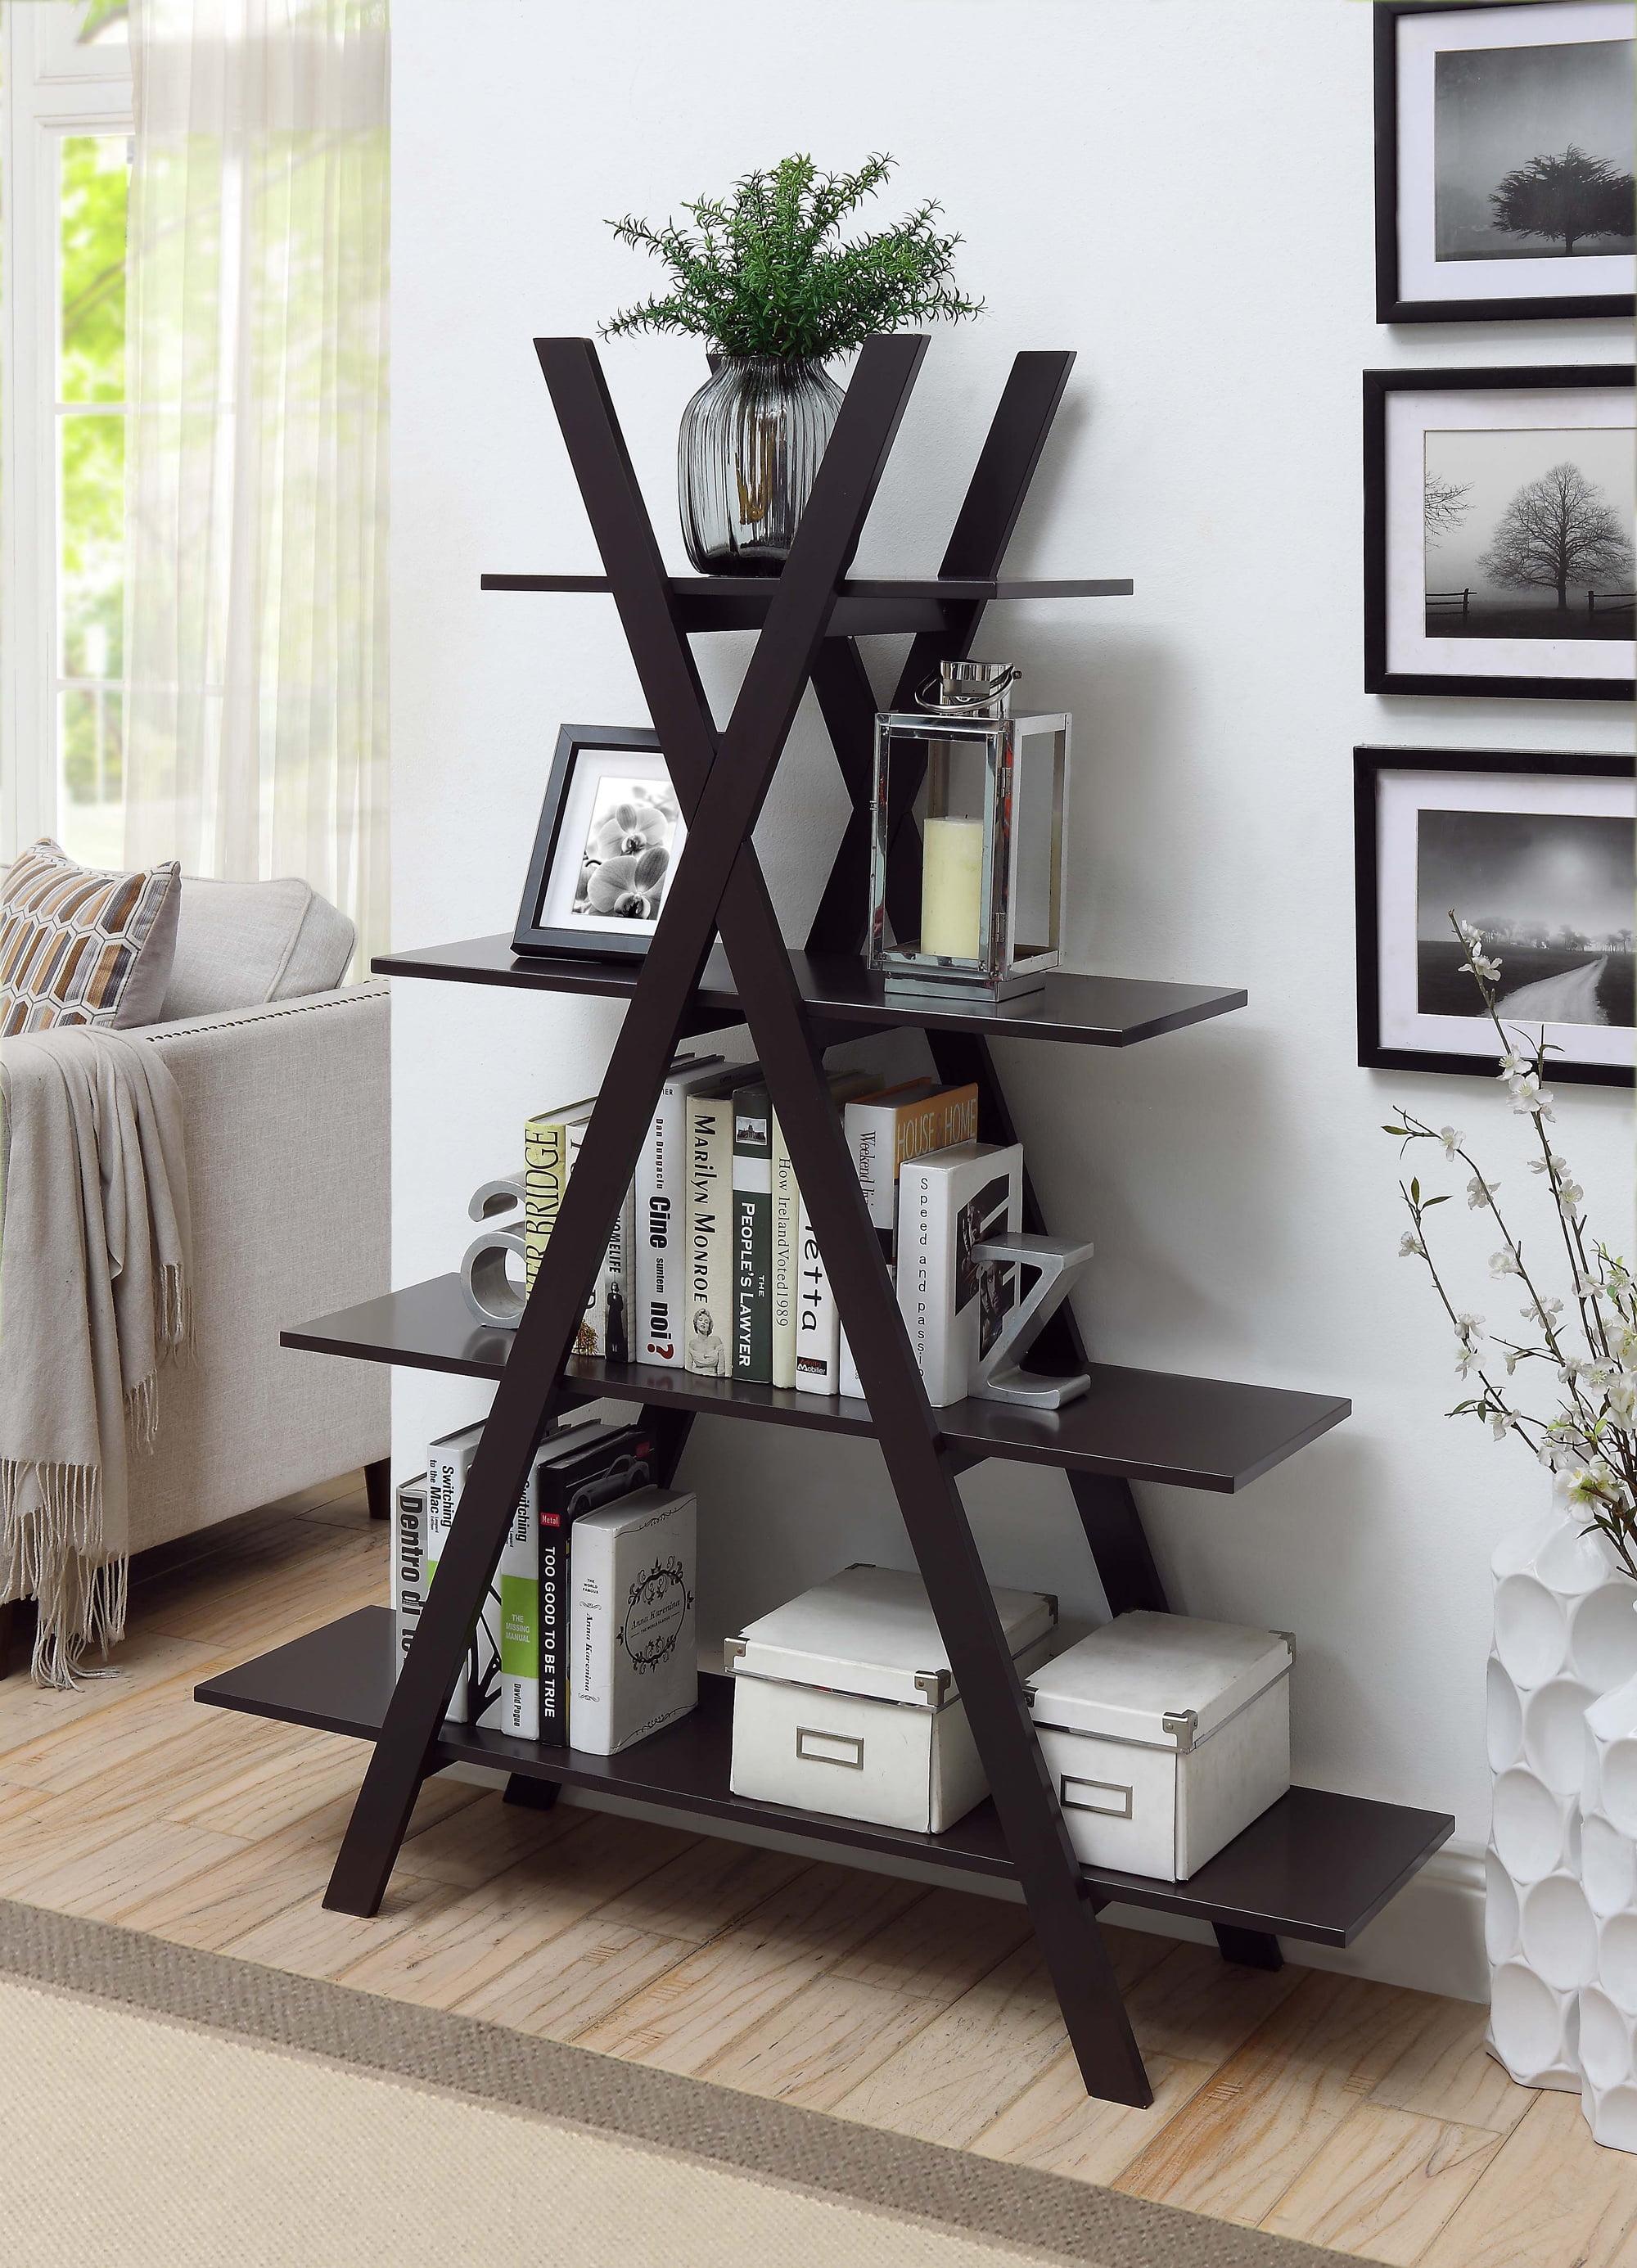 Espresso 4-Tier Ladder Bookshelf for Modern Home Decor